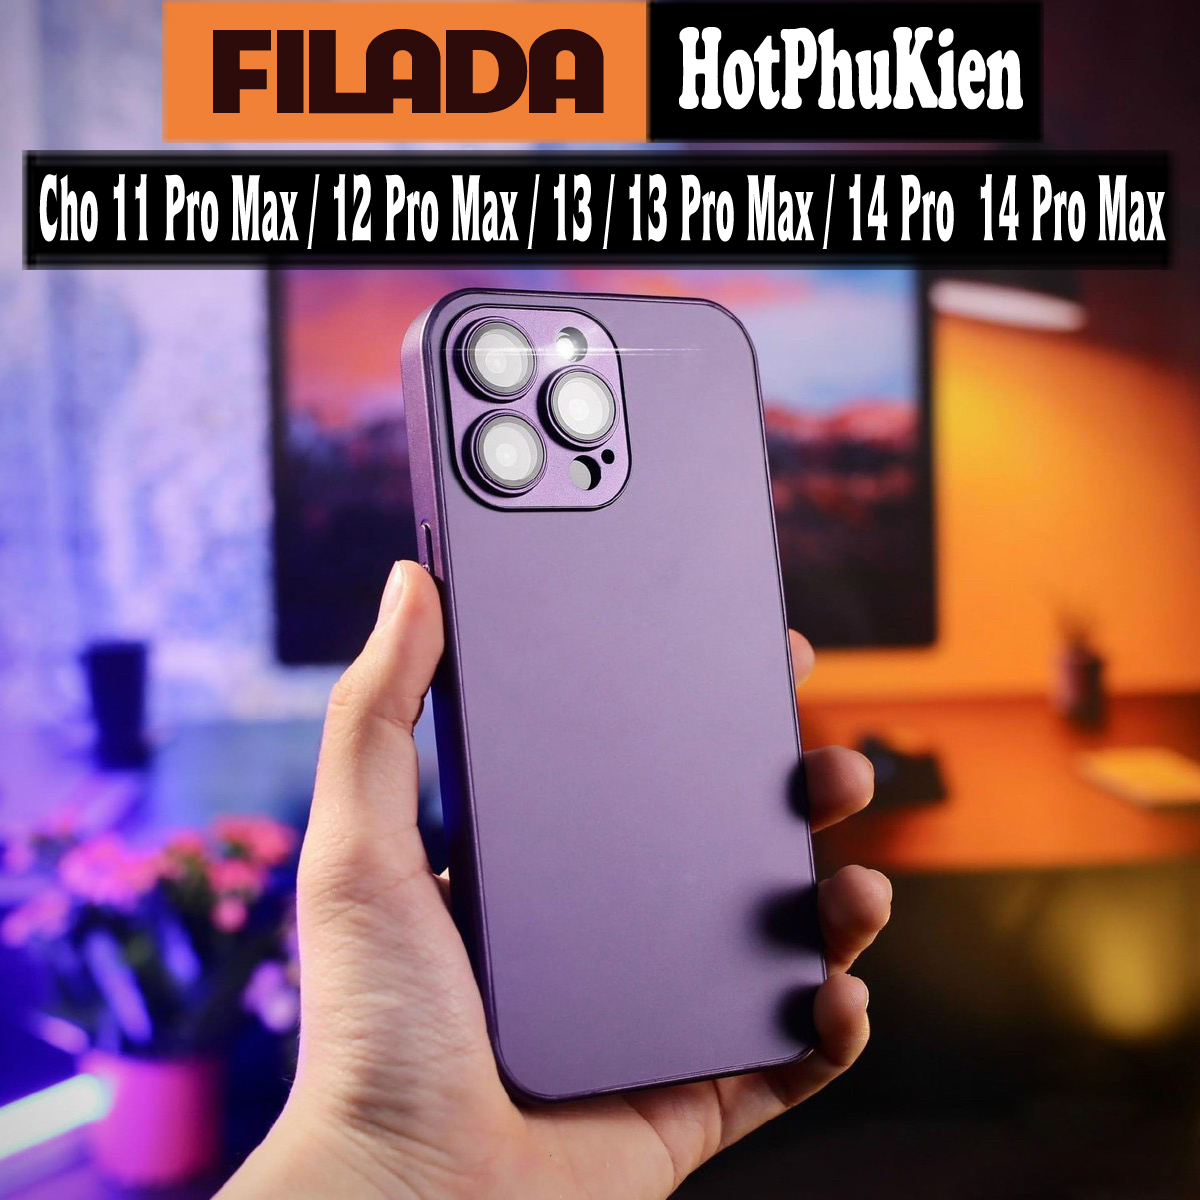 Ốp lưng tím bảo vệ camera cho iPhone 11 12 13 14 Pro Max hiệu HOTCASE Filada Tranform Case - siêu mỏng 1.5mm, mặt lưng siêu mềm mịn, có gờ bảo vệ camera - hàng nhập khẩu